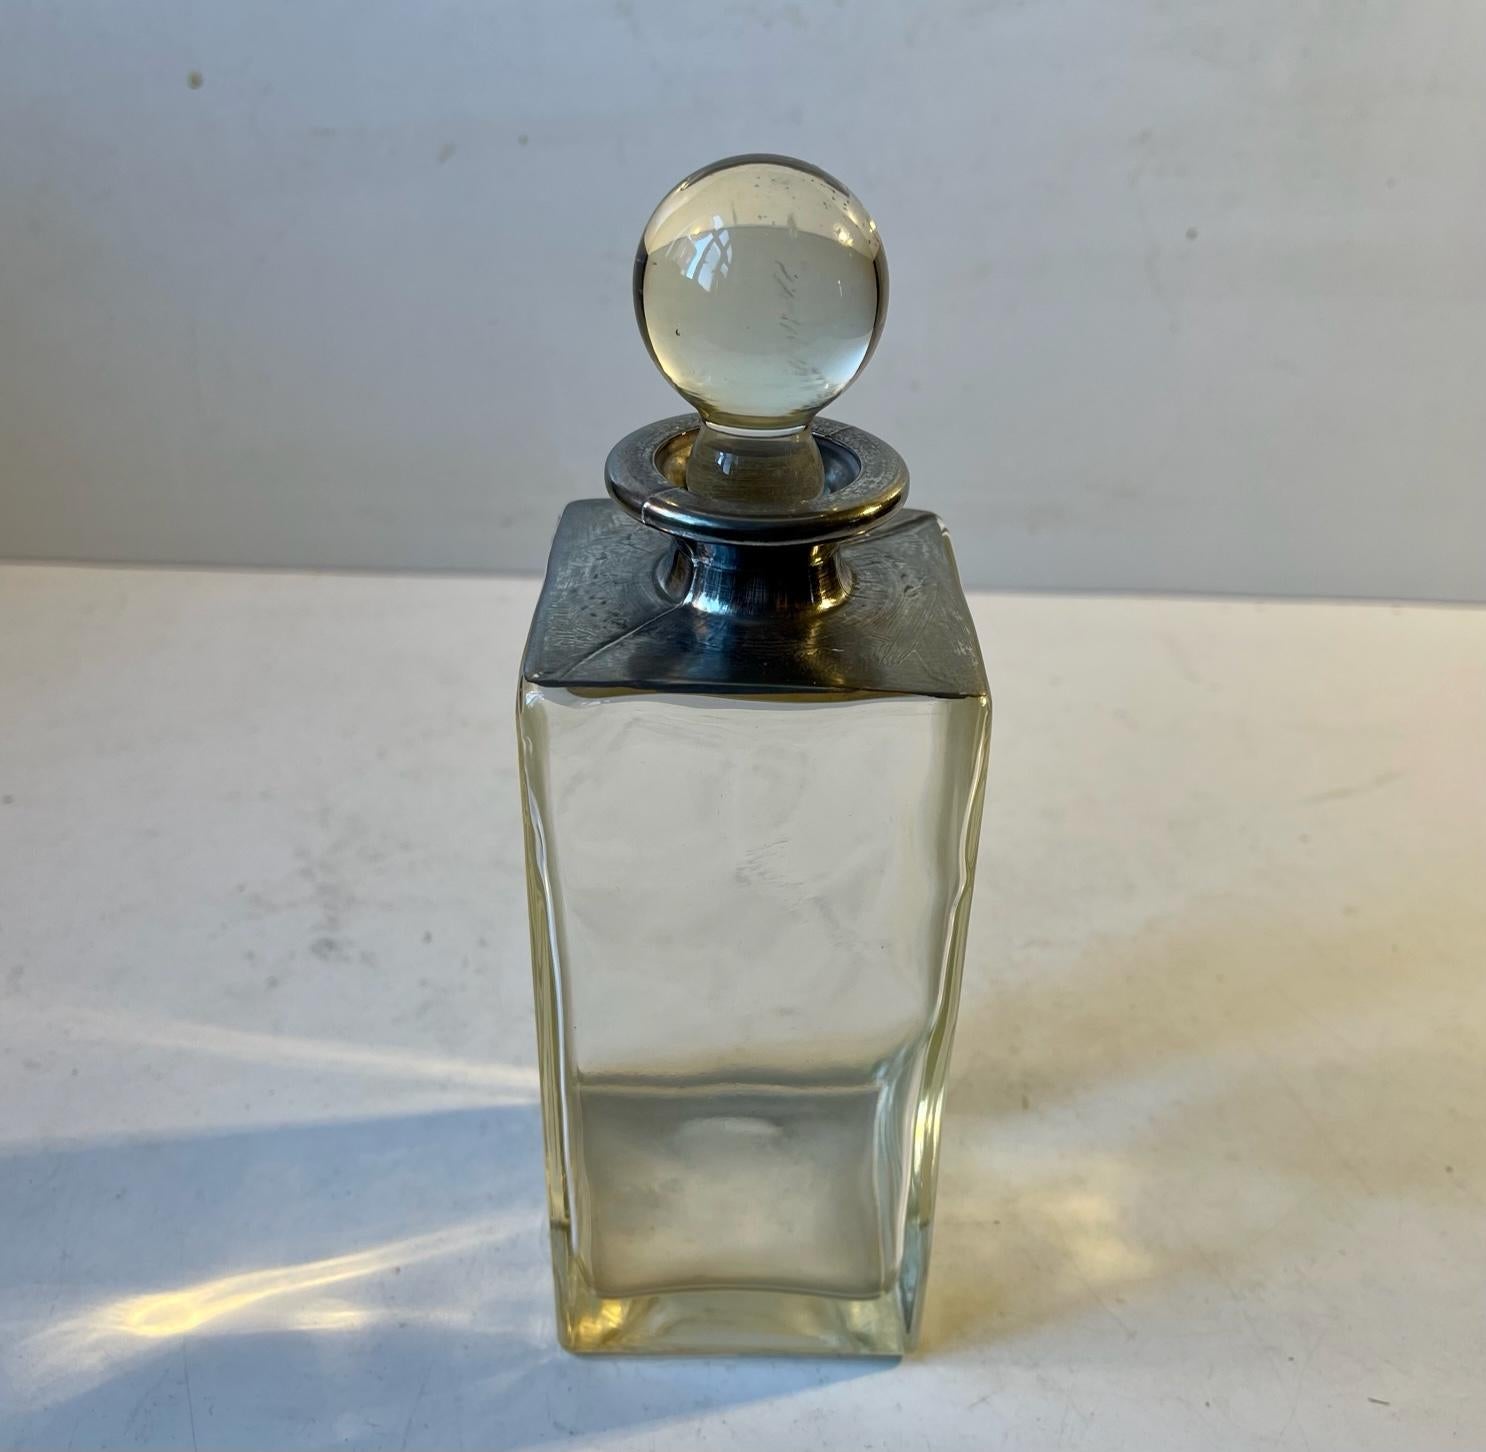 Petite carafe rectangulaire en verre épais décorée d'un couvercle en métal étain/blanc. Style Bauhaus distinctif. Fabriqué en Allemagne ou en Scandinavie vers 1930. Mesures : H : 20/16 cm, L/D : 7 cm. Capacité : 0,4 litre.